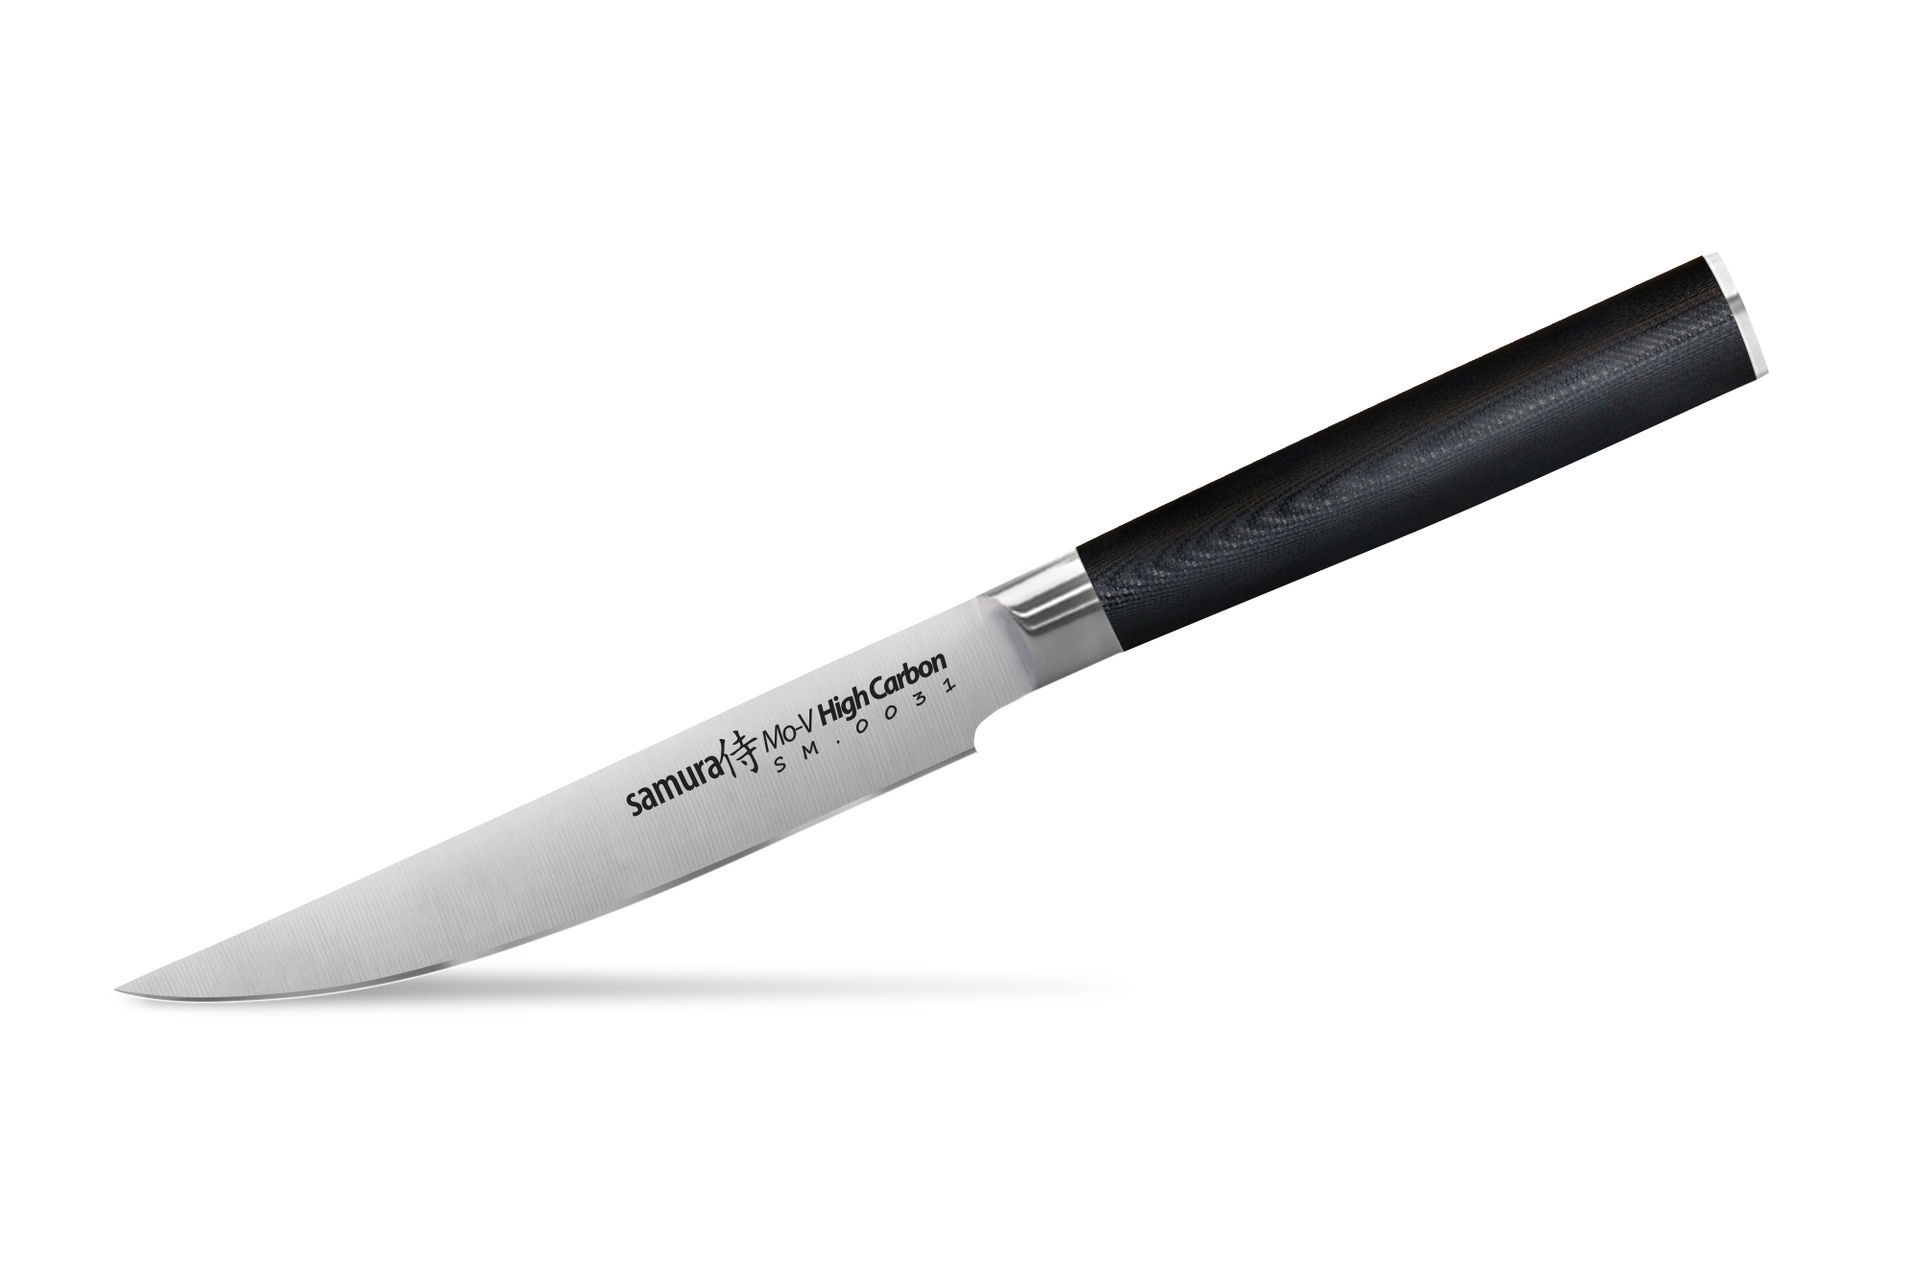 Нож кухонный "Samura Mo-V" для стейка - SM-0031, сталь AUS-8, рукоять G10, 120 мм от Ножиков